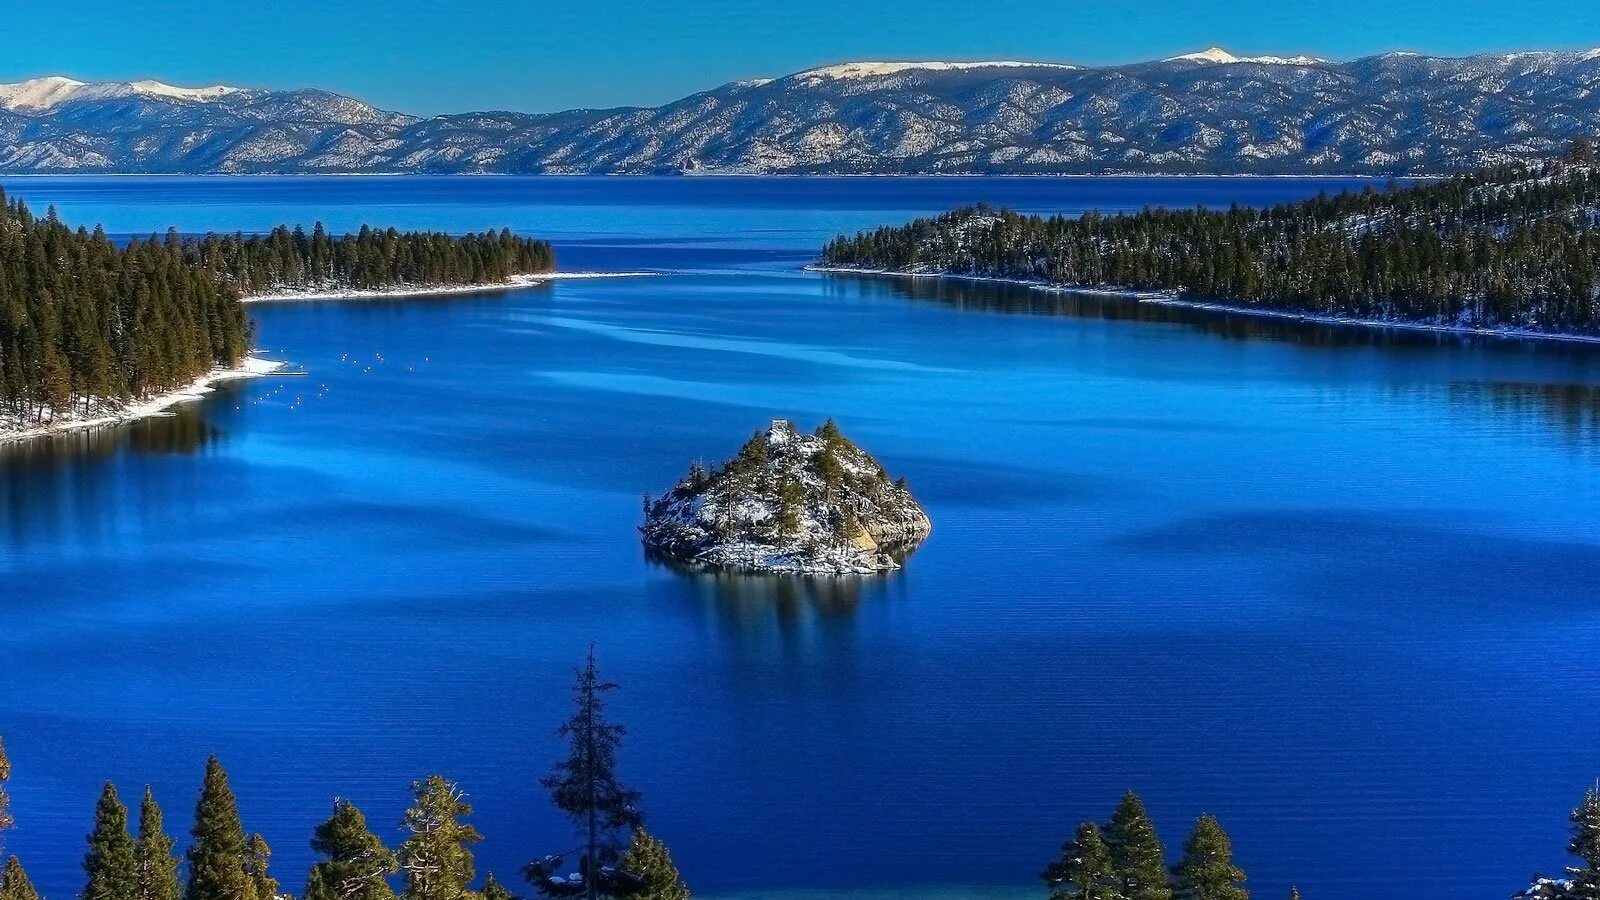 Озеро входящее в состав великих американских озер. Озеро Тахо Северная Америка. Колорадо озеро Тахо. Озеро Тахо Калифорния. Озеро Тахо, Невада, США.